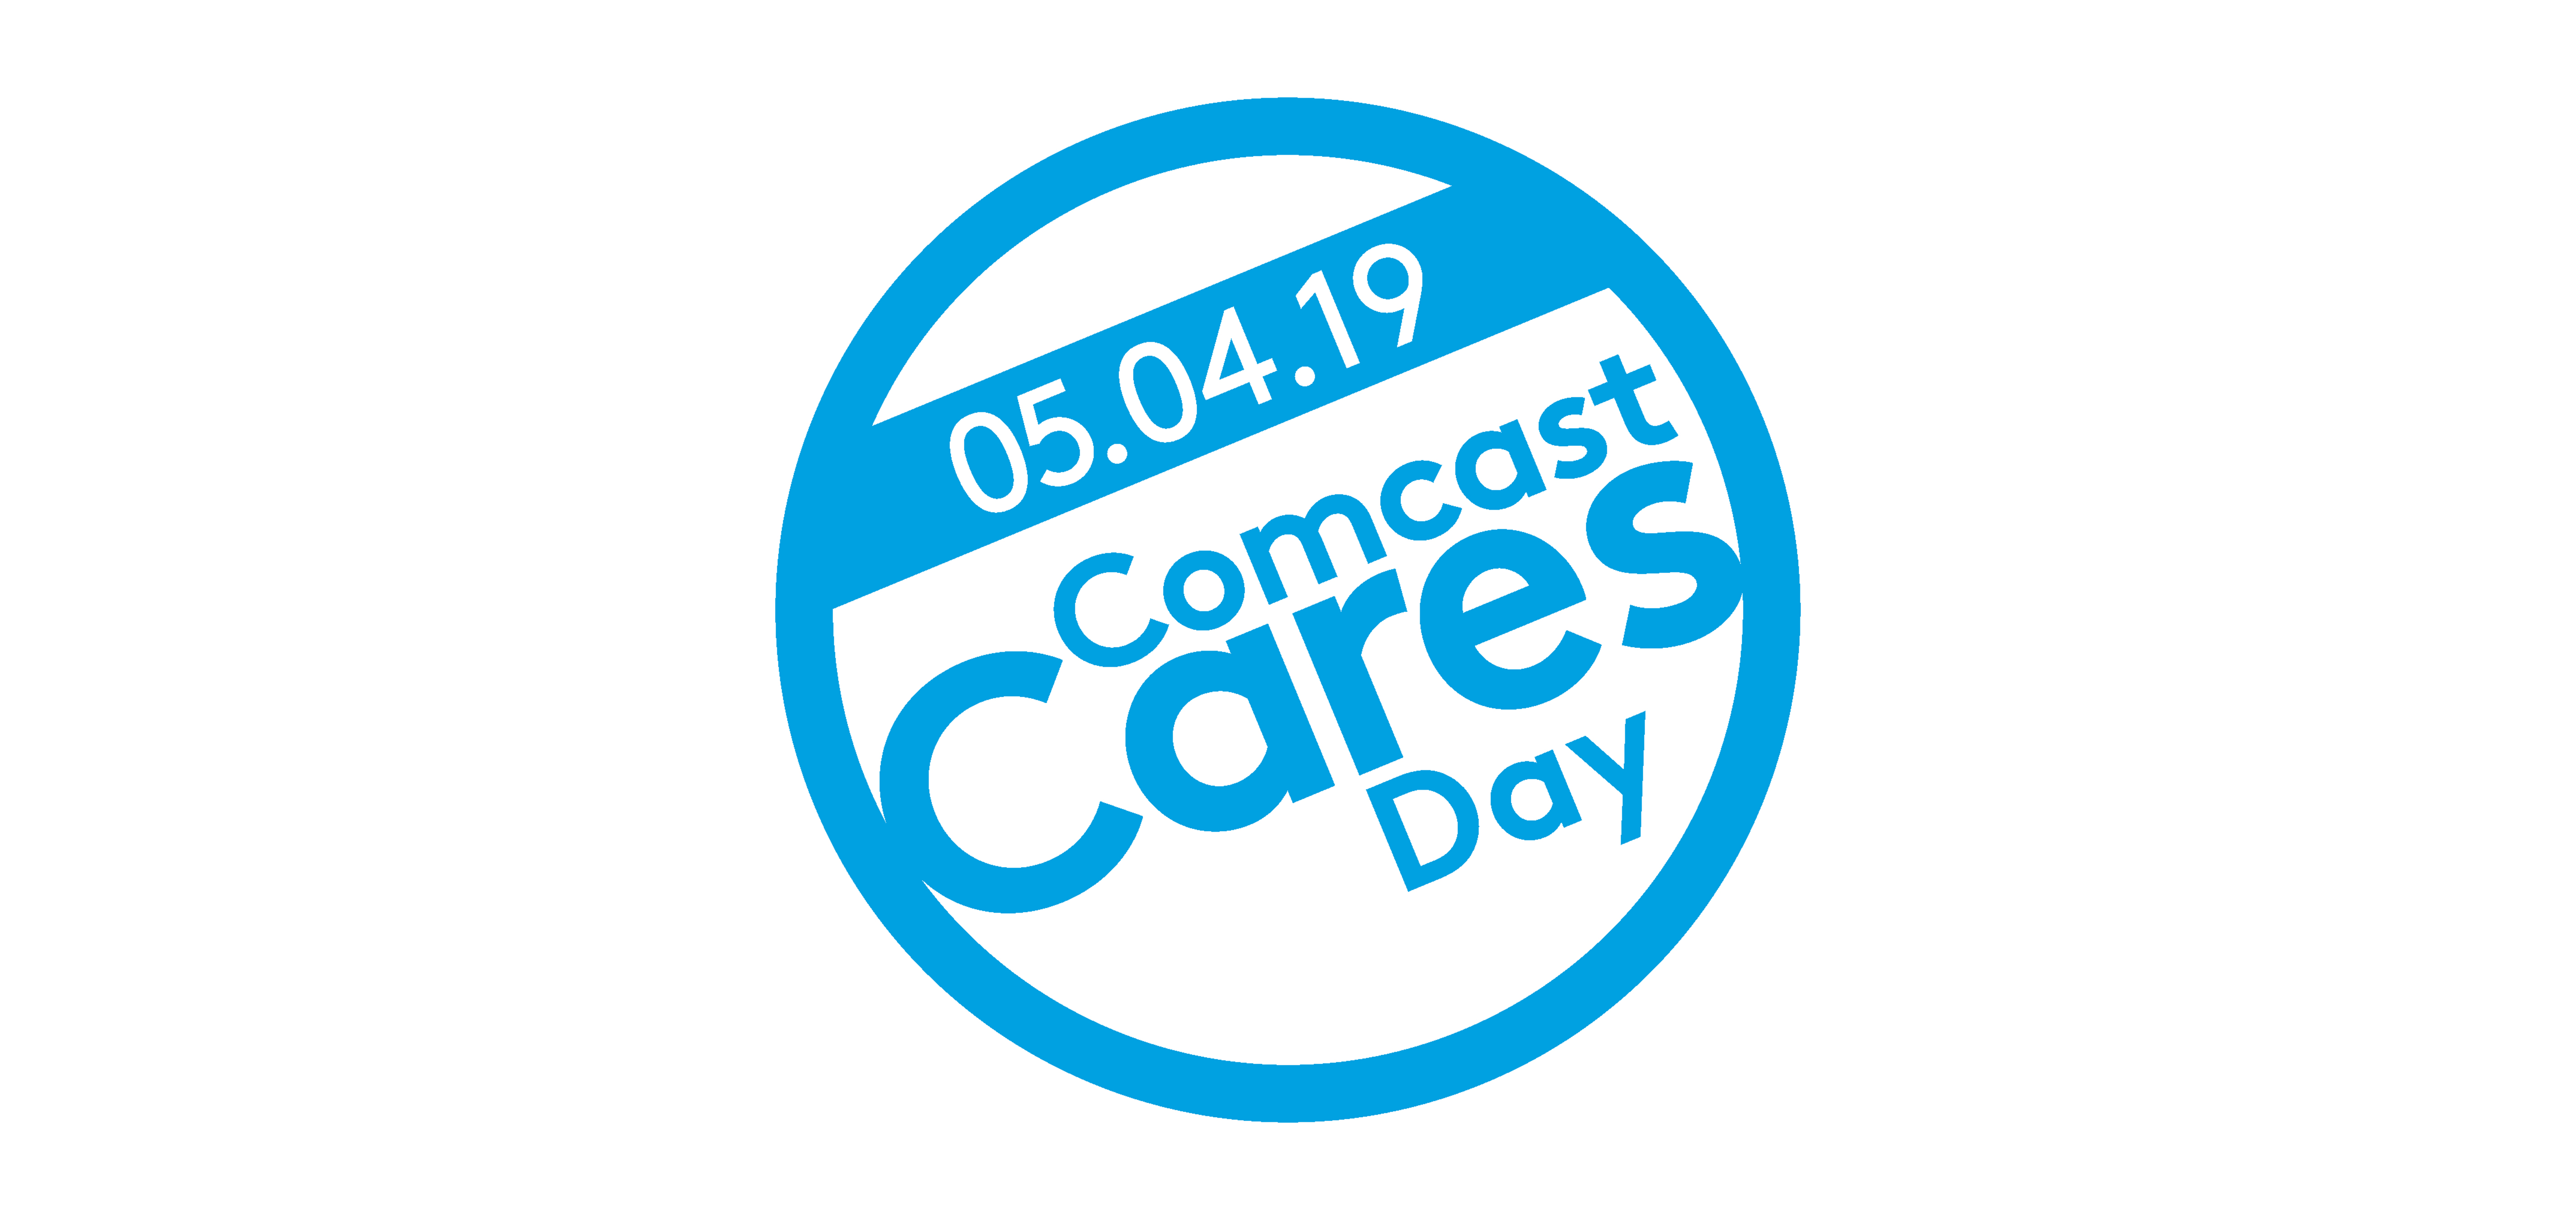 The Comcast Cares Day logo.